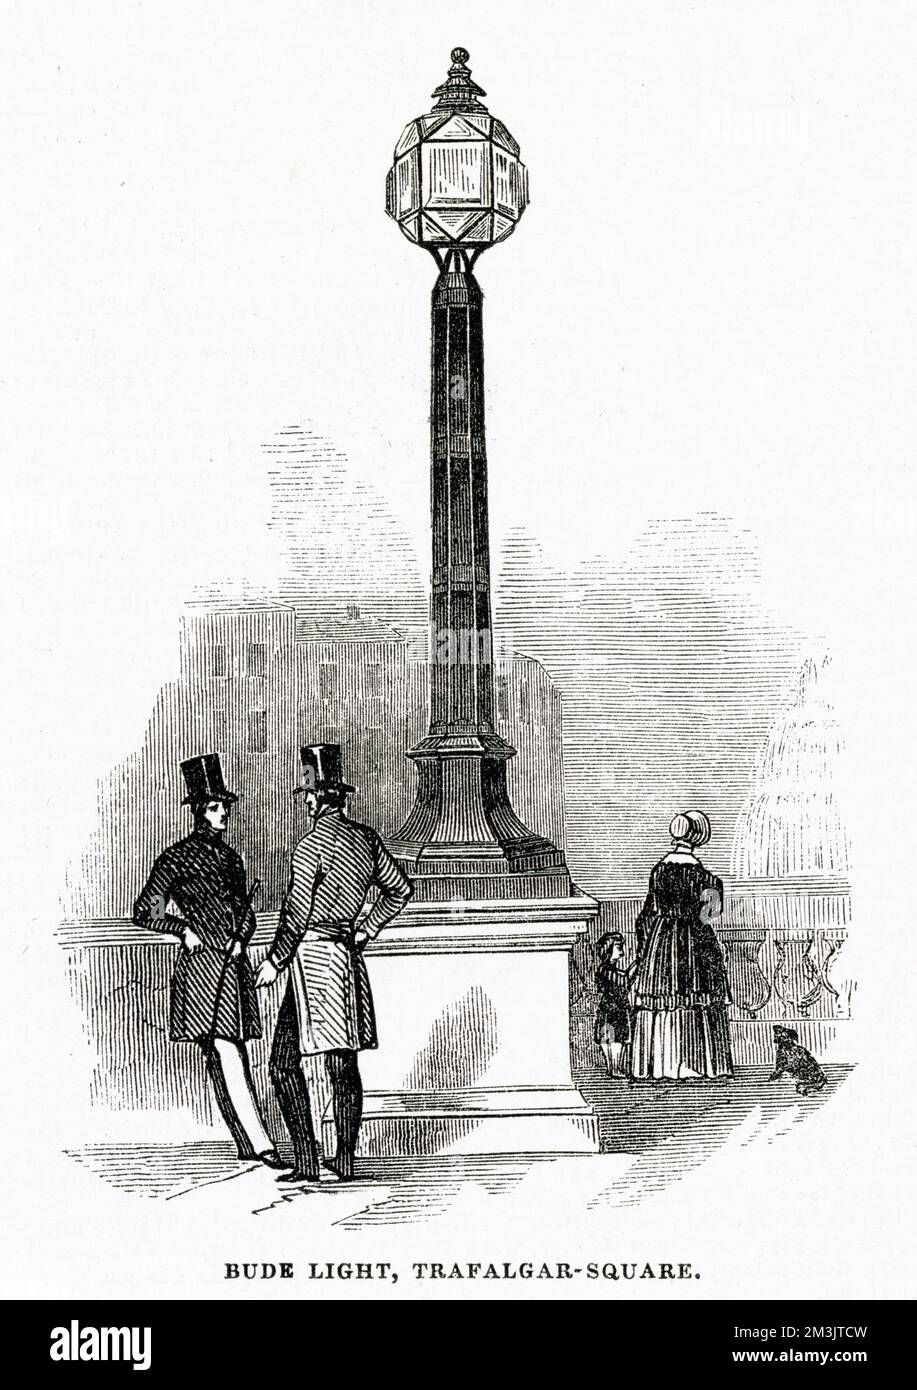 Luci Bude a Trafalgar Square, Londra. Brevettata da Sir Goldsworthy Gurney nel 1839, la luce Bude introduceva gas ossigeno nel mezzo di una fiamma standard di una lampada ad olio. Il carbone incombusto della fiamma dell'olio bruciò incredibilmente in modo brillante e si produceva una luce bianca intensa. Data: 1845 Foto Stock